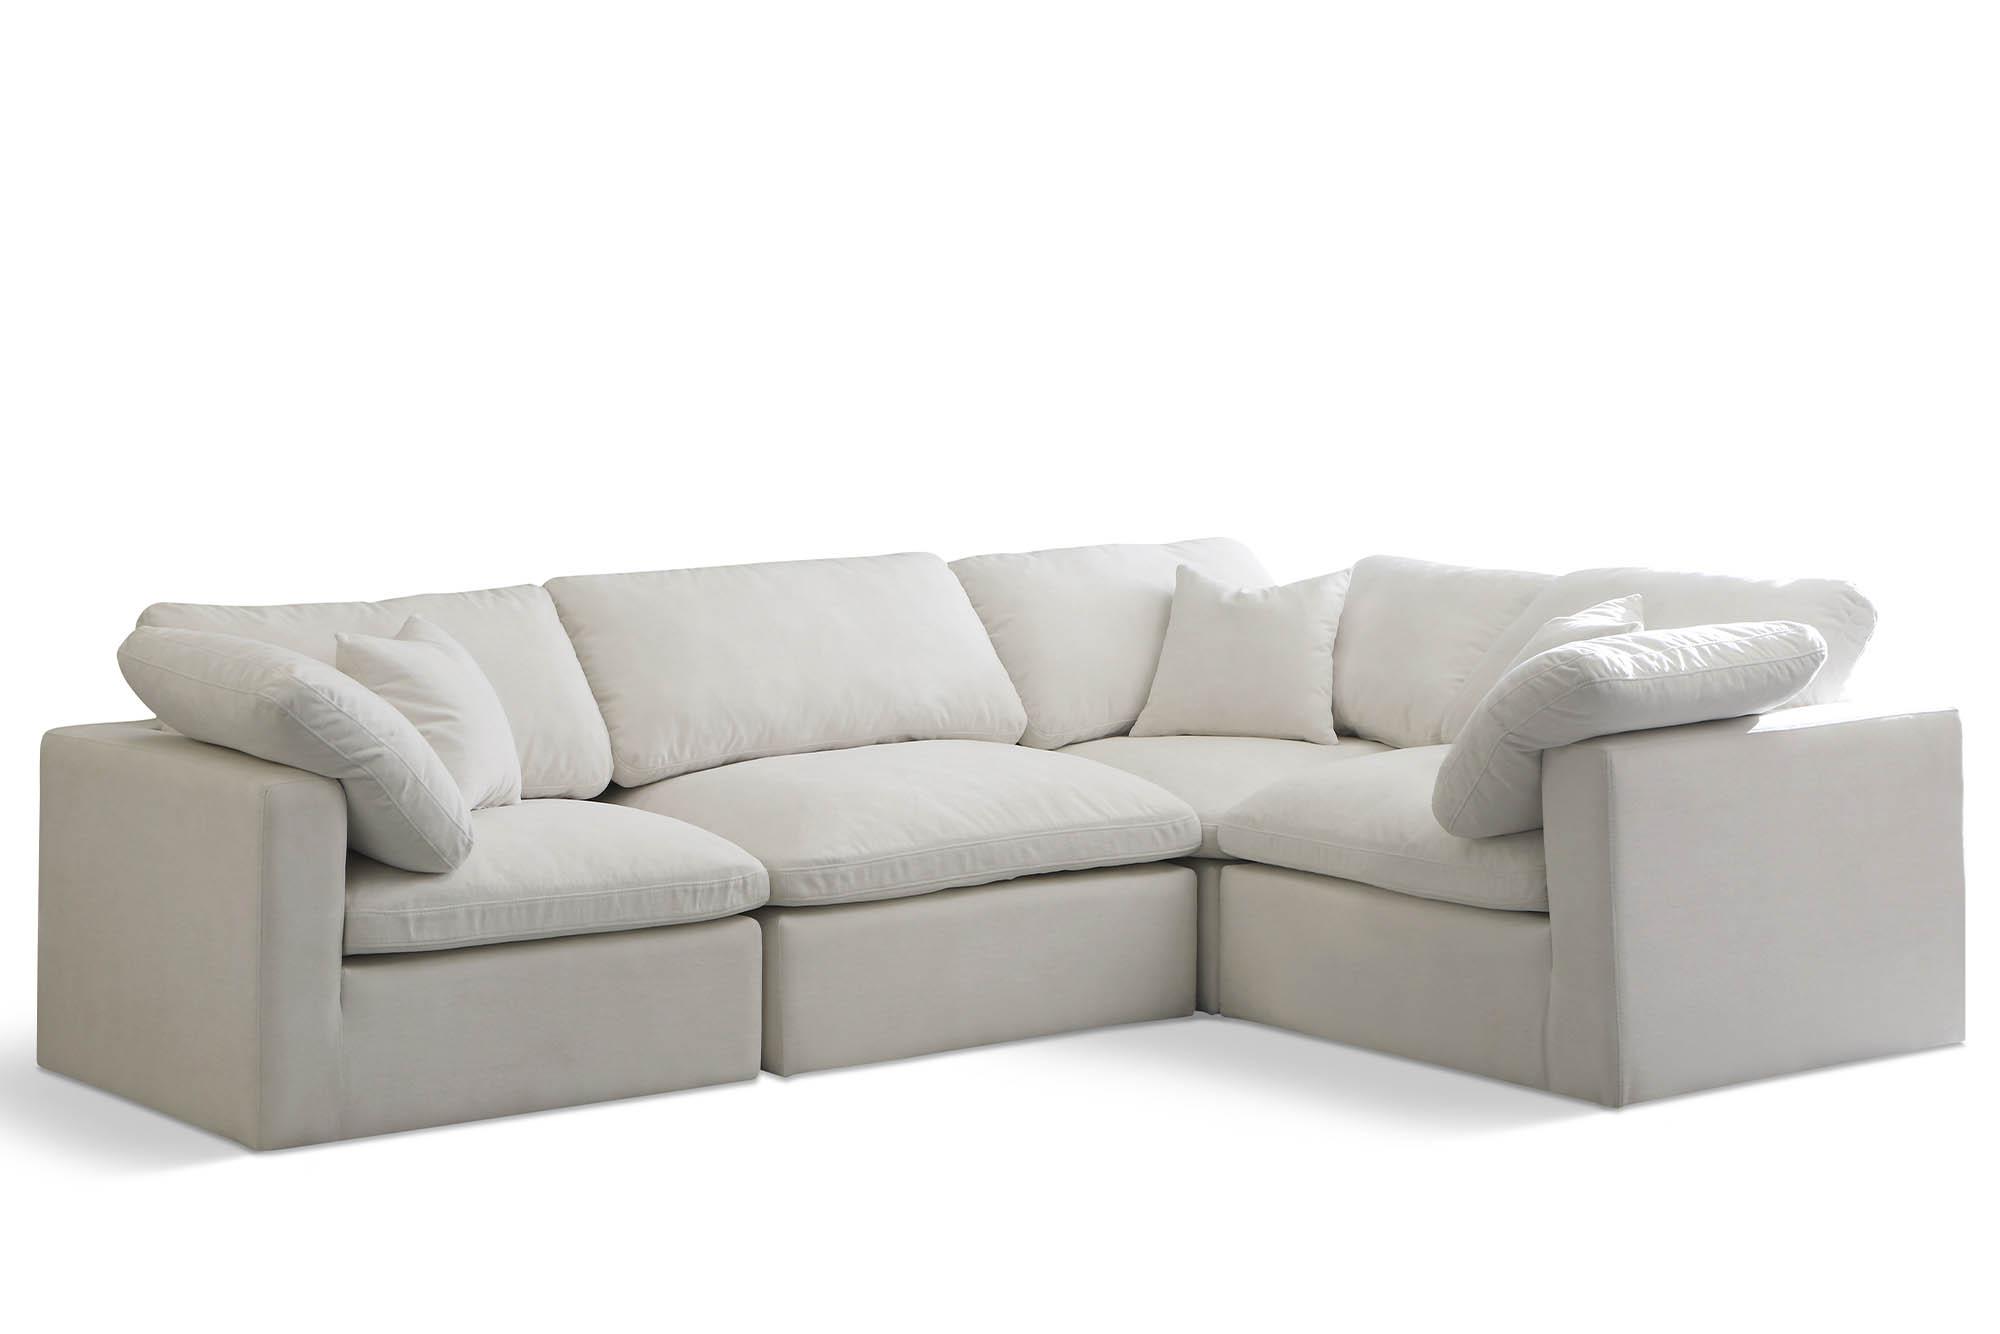 Contemporary, Modern Modular Sectional Sofa 602Cream-Sec4C 602Cream-Sec4C in Cream Fabric